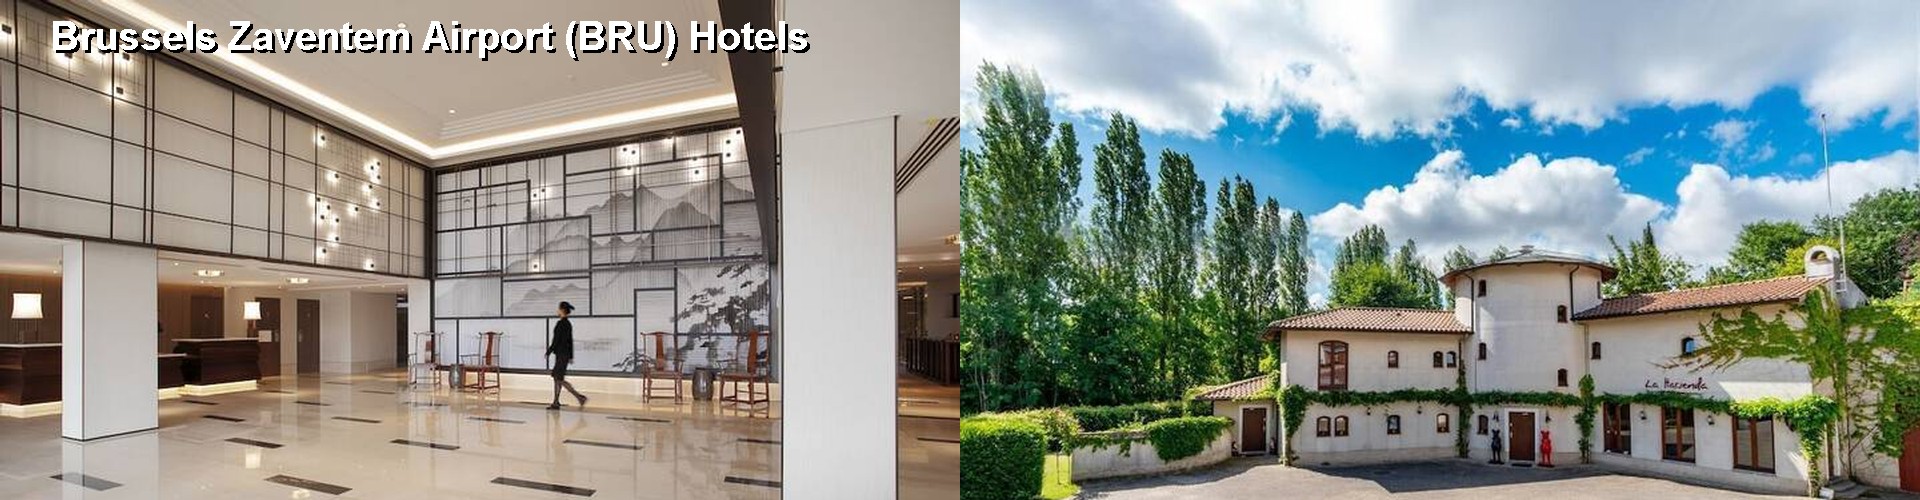 5 Best Hotels near Brussels Zaventem Airport (BRU)